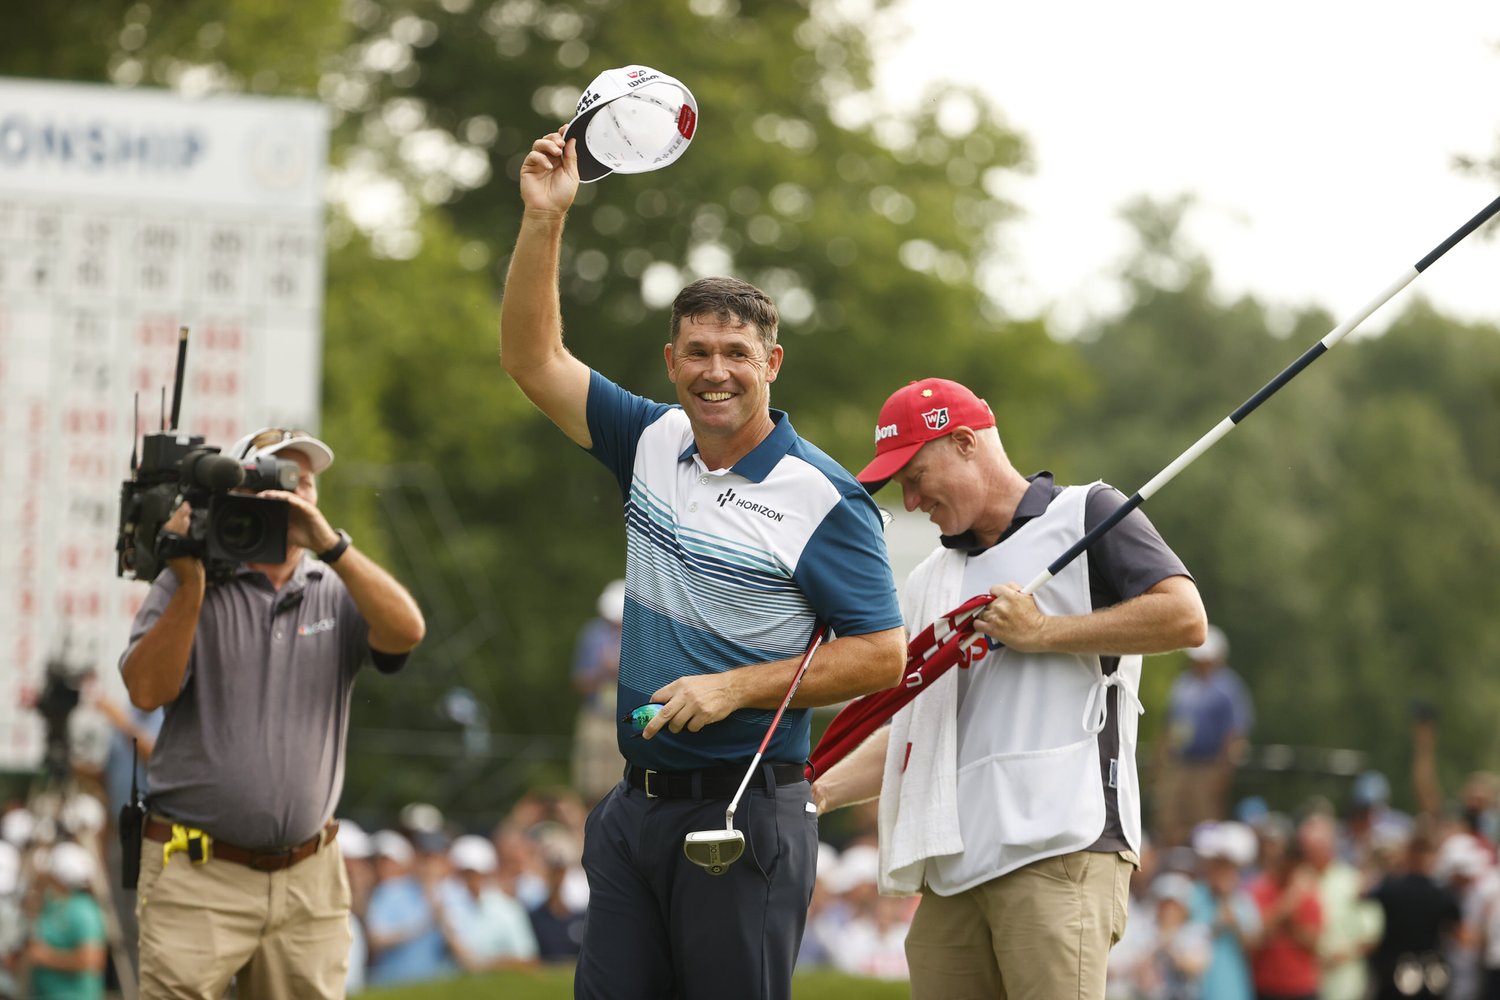 Harrington yang rendah hati akan dilantik ke Hall of Fame Golf Dunia pada tahun 2024 – Berita